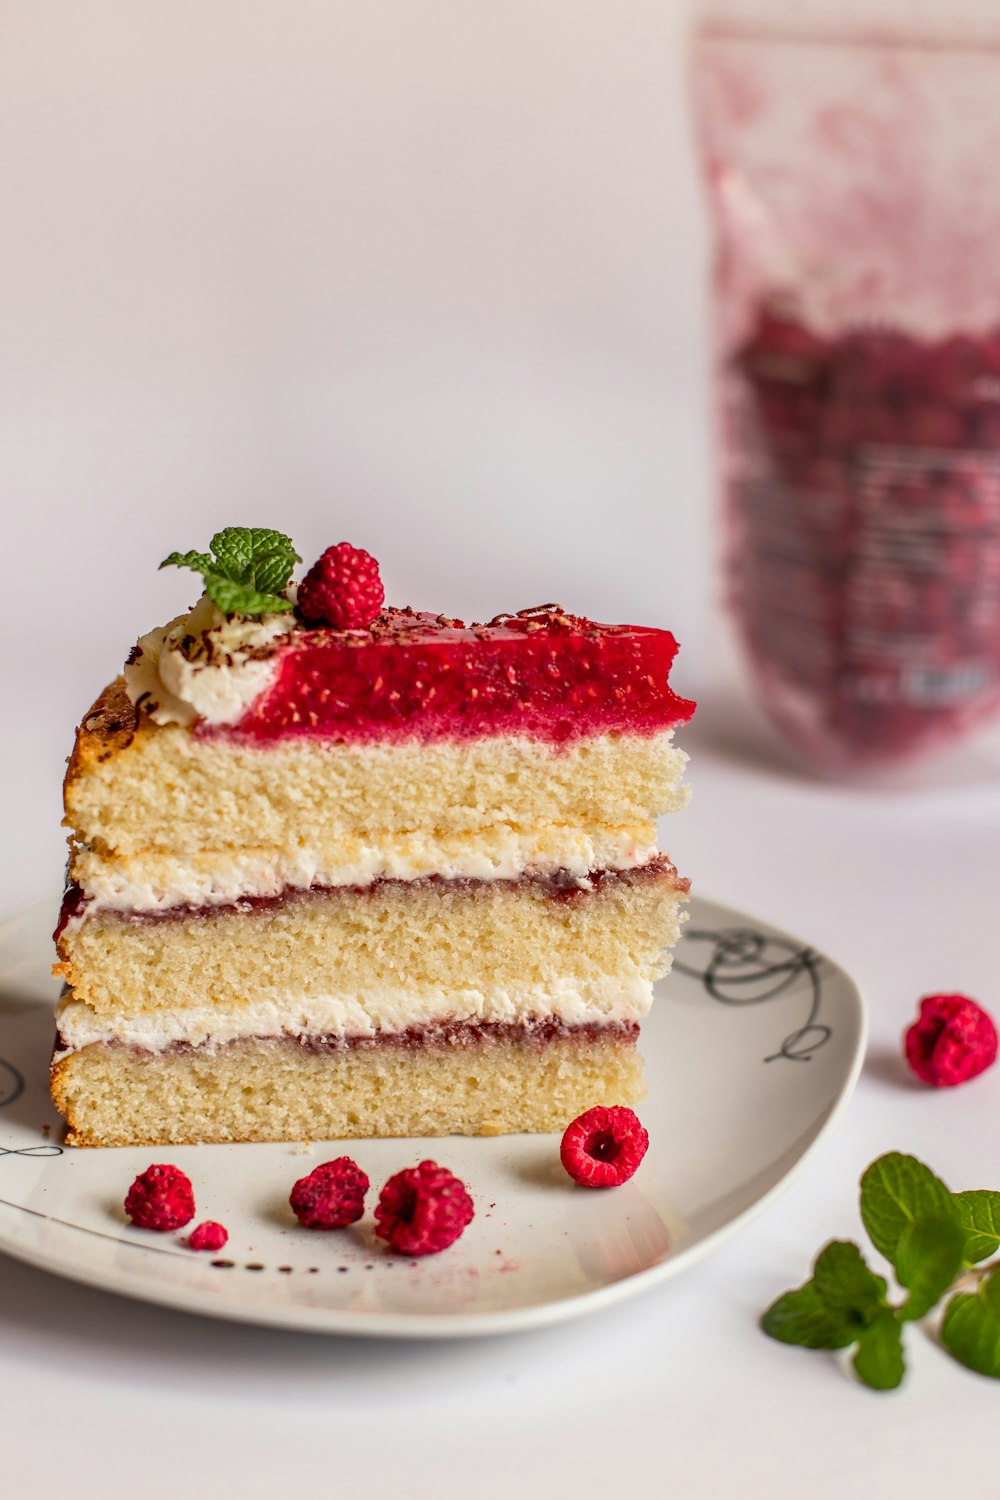 gâteau aux fraises sur assiette en céramique blanche